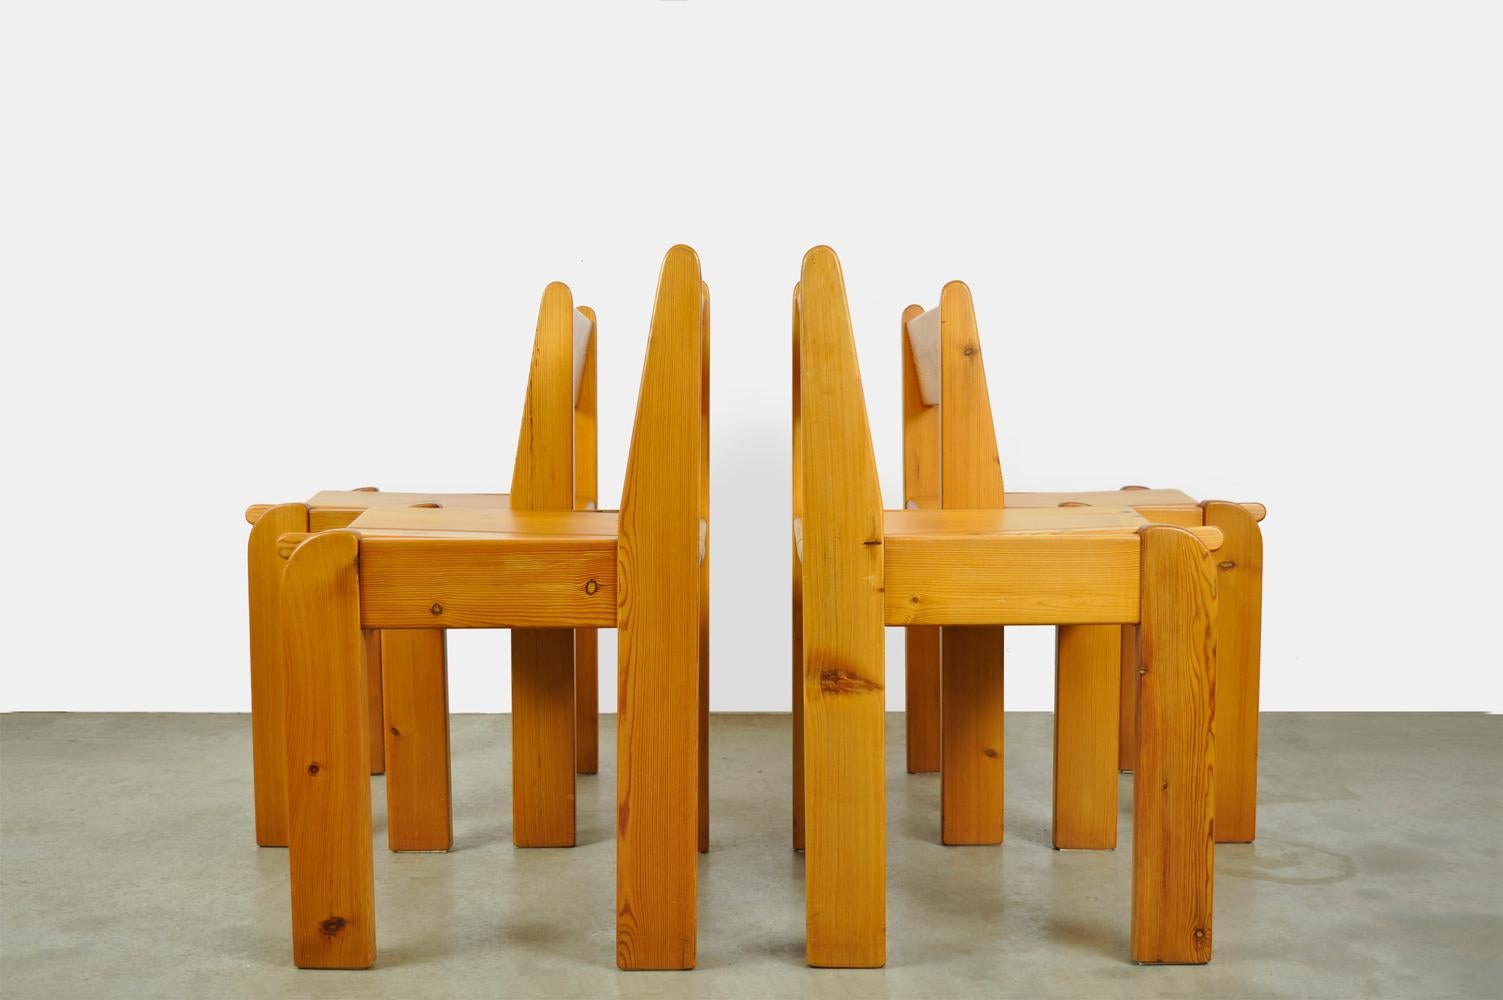 Brutalist Pine Dining Chairs by Ate Van Apeldoorn for Houtwerk Hattem, 1970s For Sale 1